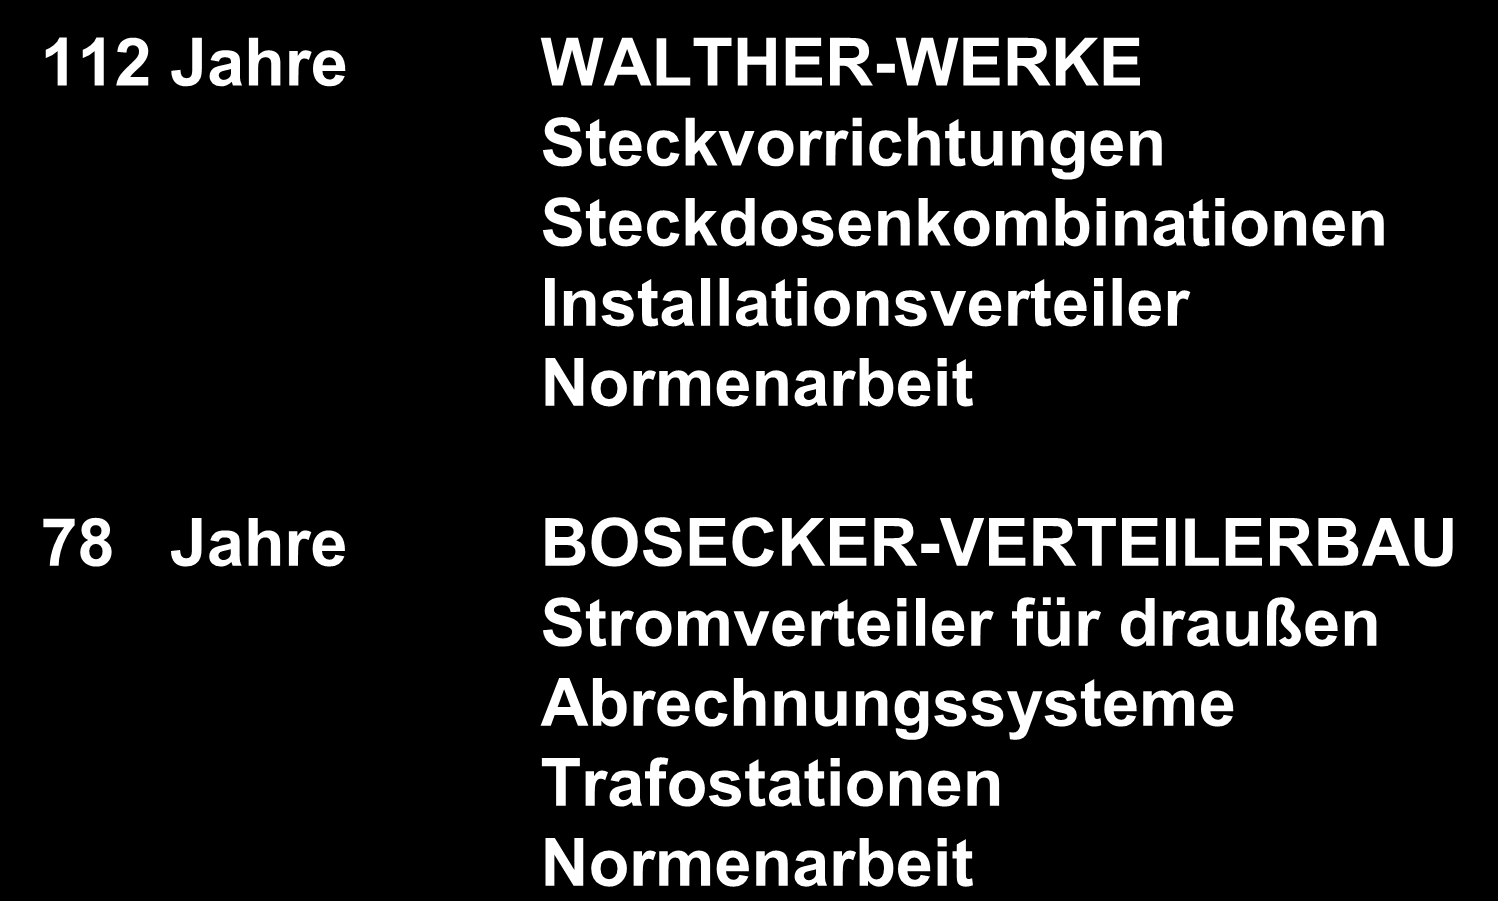 e-mobility bei Walther-Werke 112 Jahre WALTHER-WERKE Steckvorrichtungen Steckdosenkombinationen Installationsverteiler